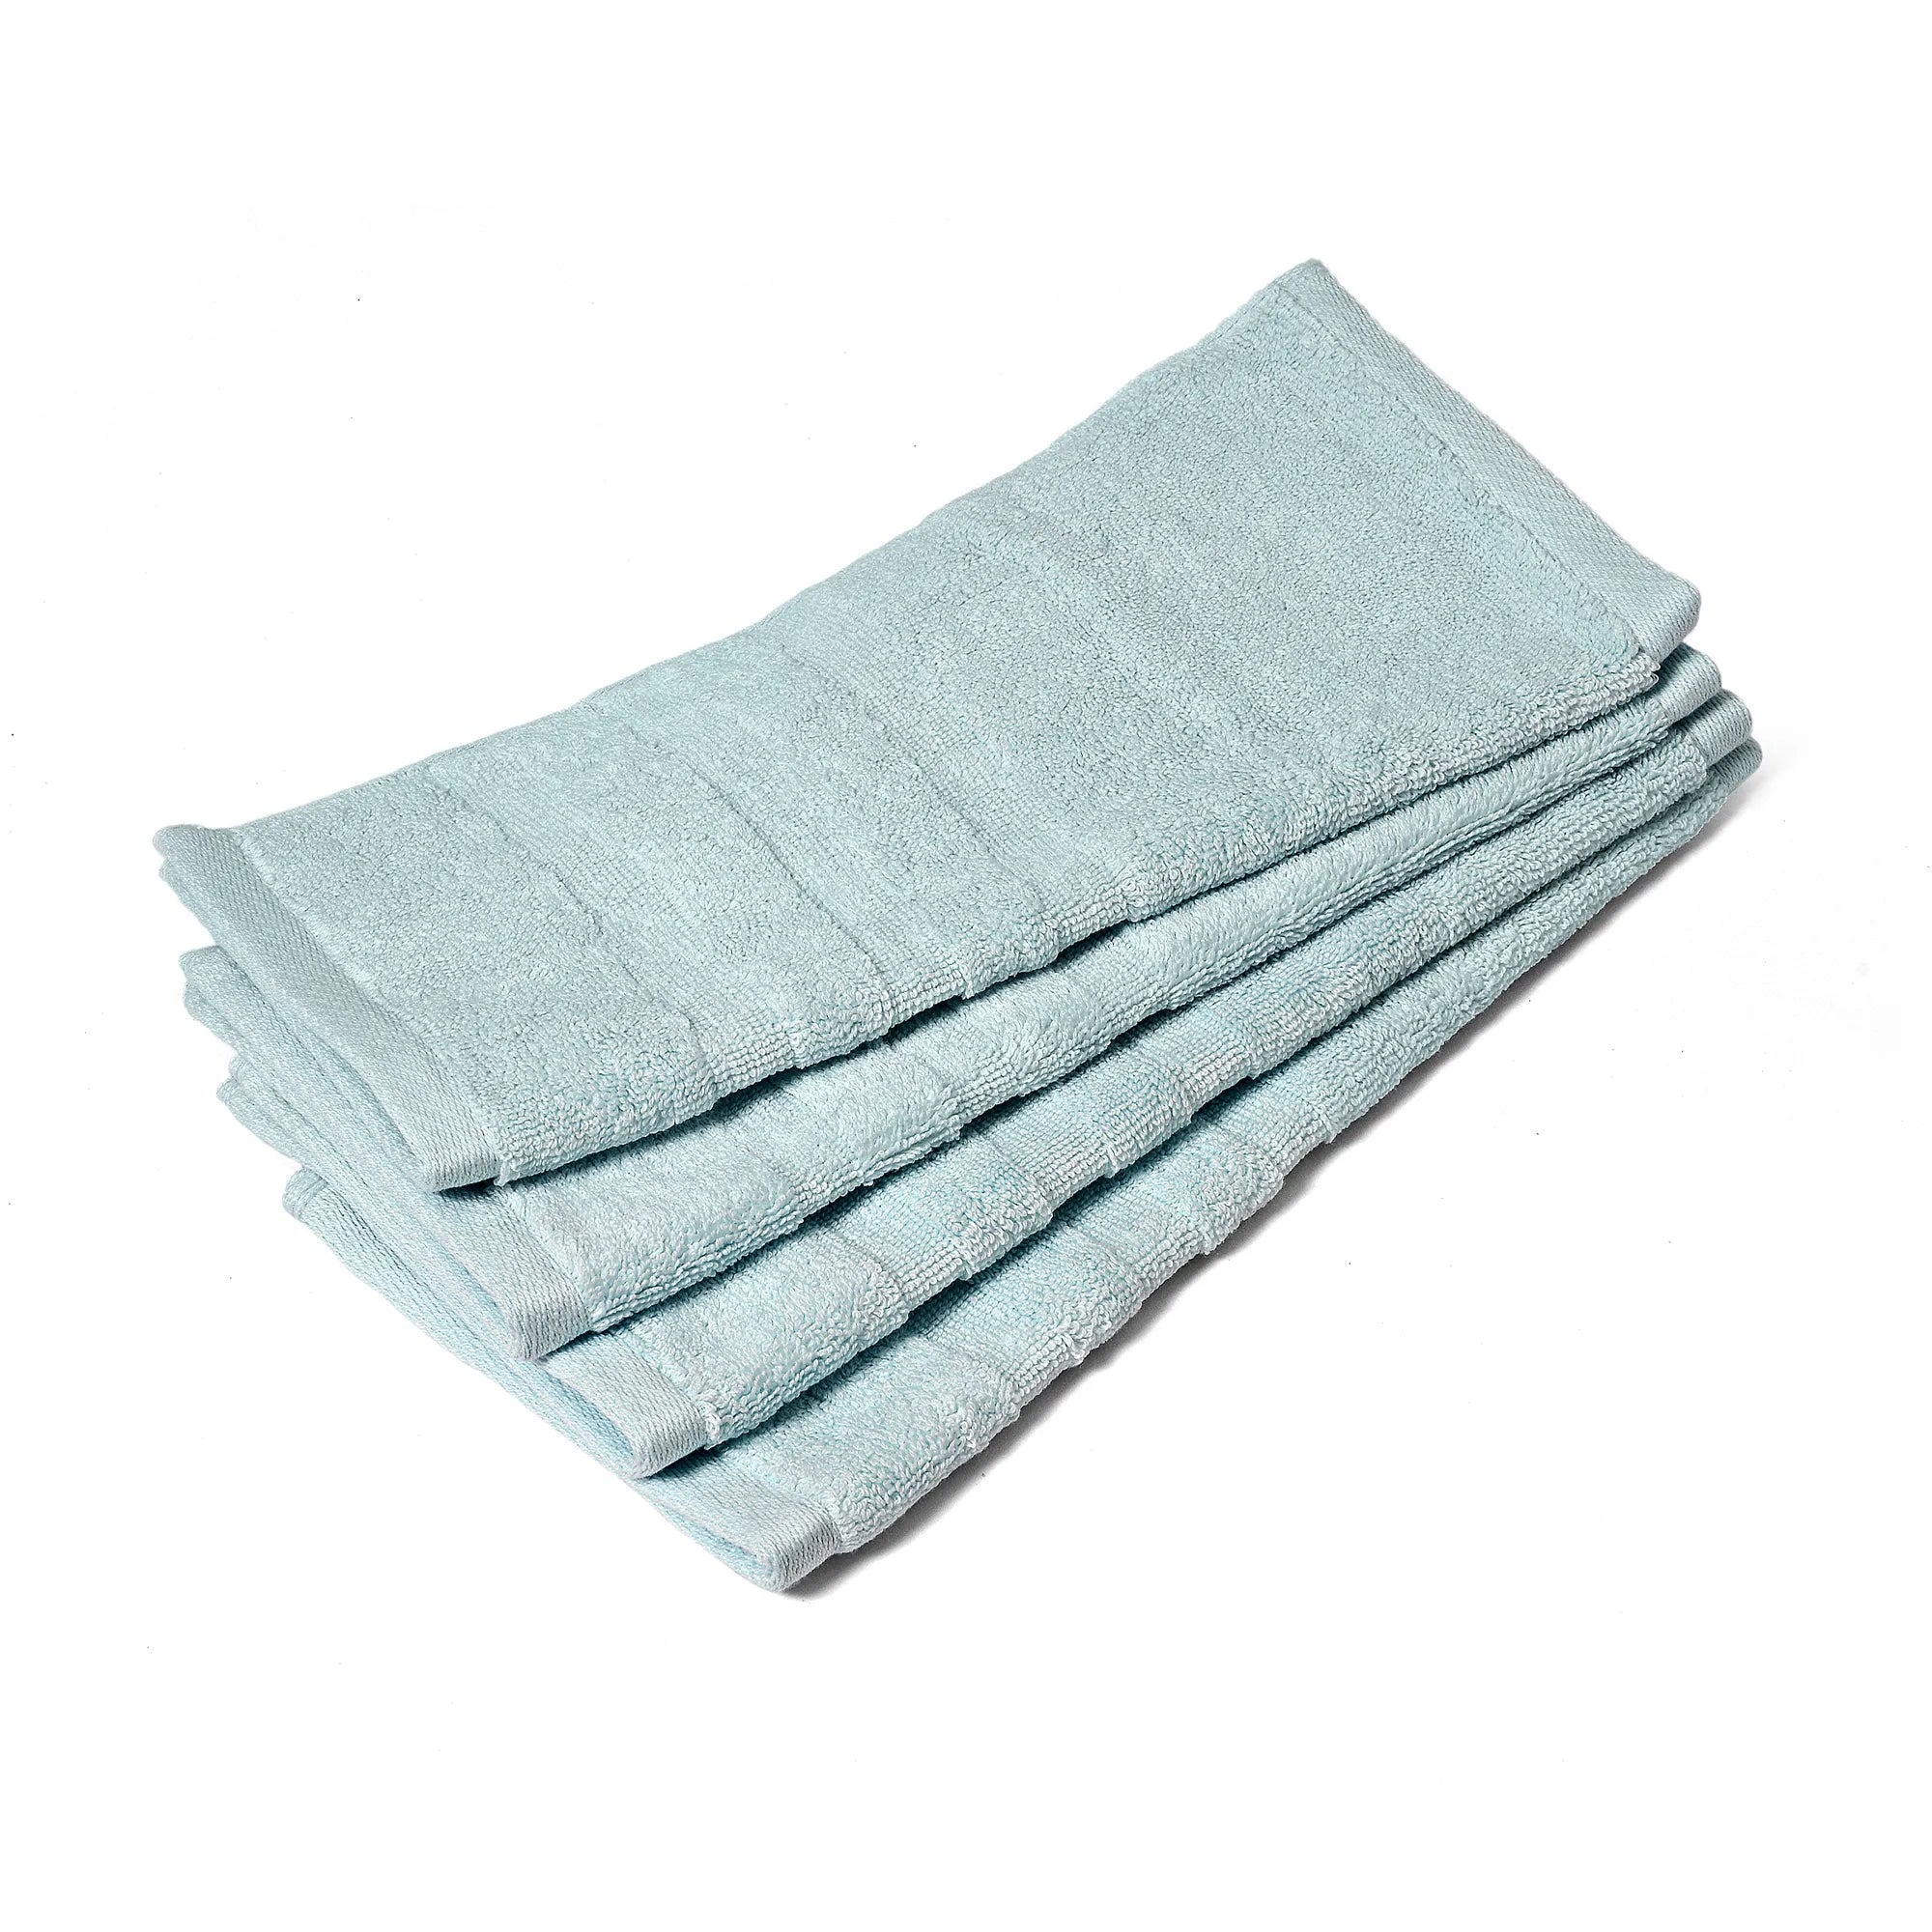 Face Towel - Set of 3